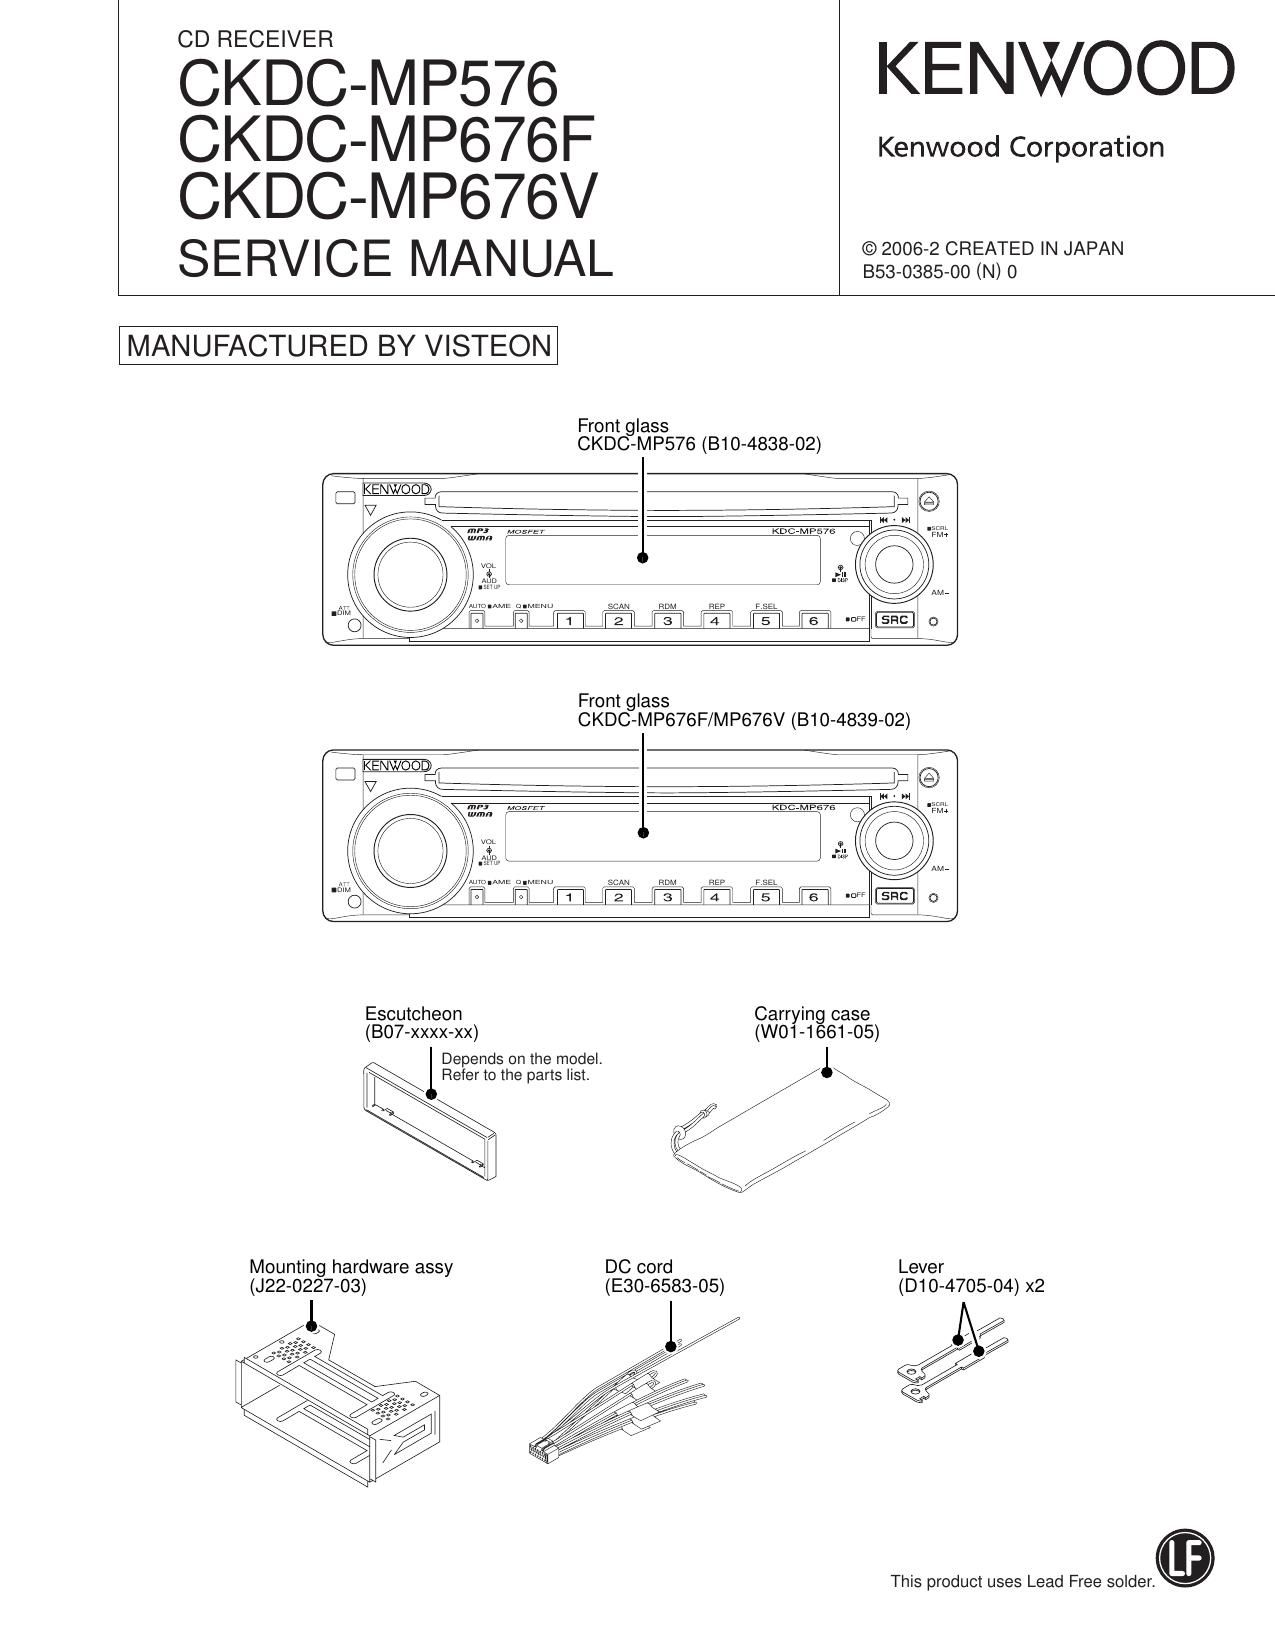 Kenwood CKDC MP 576 Service Manual